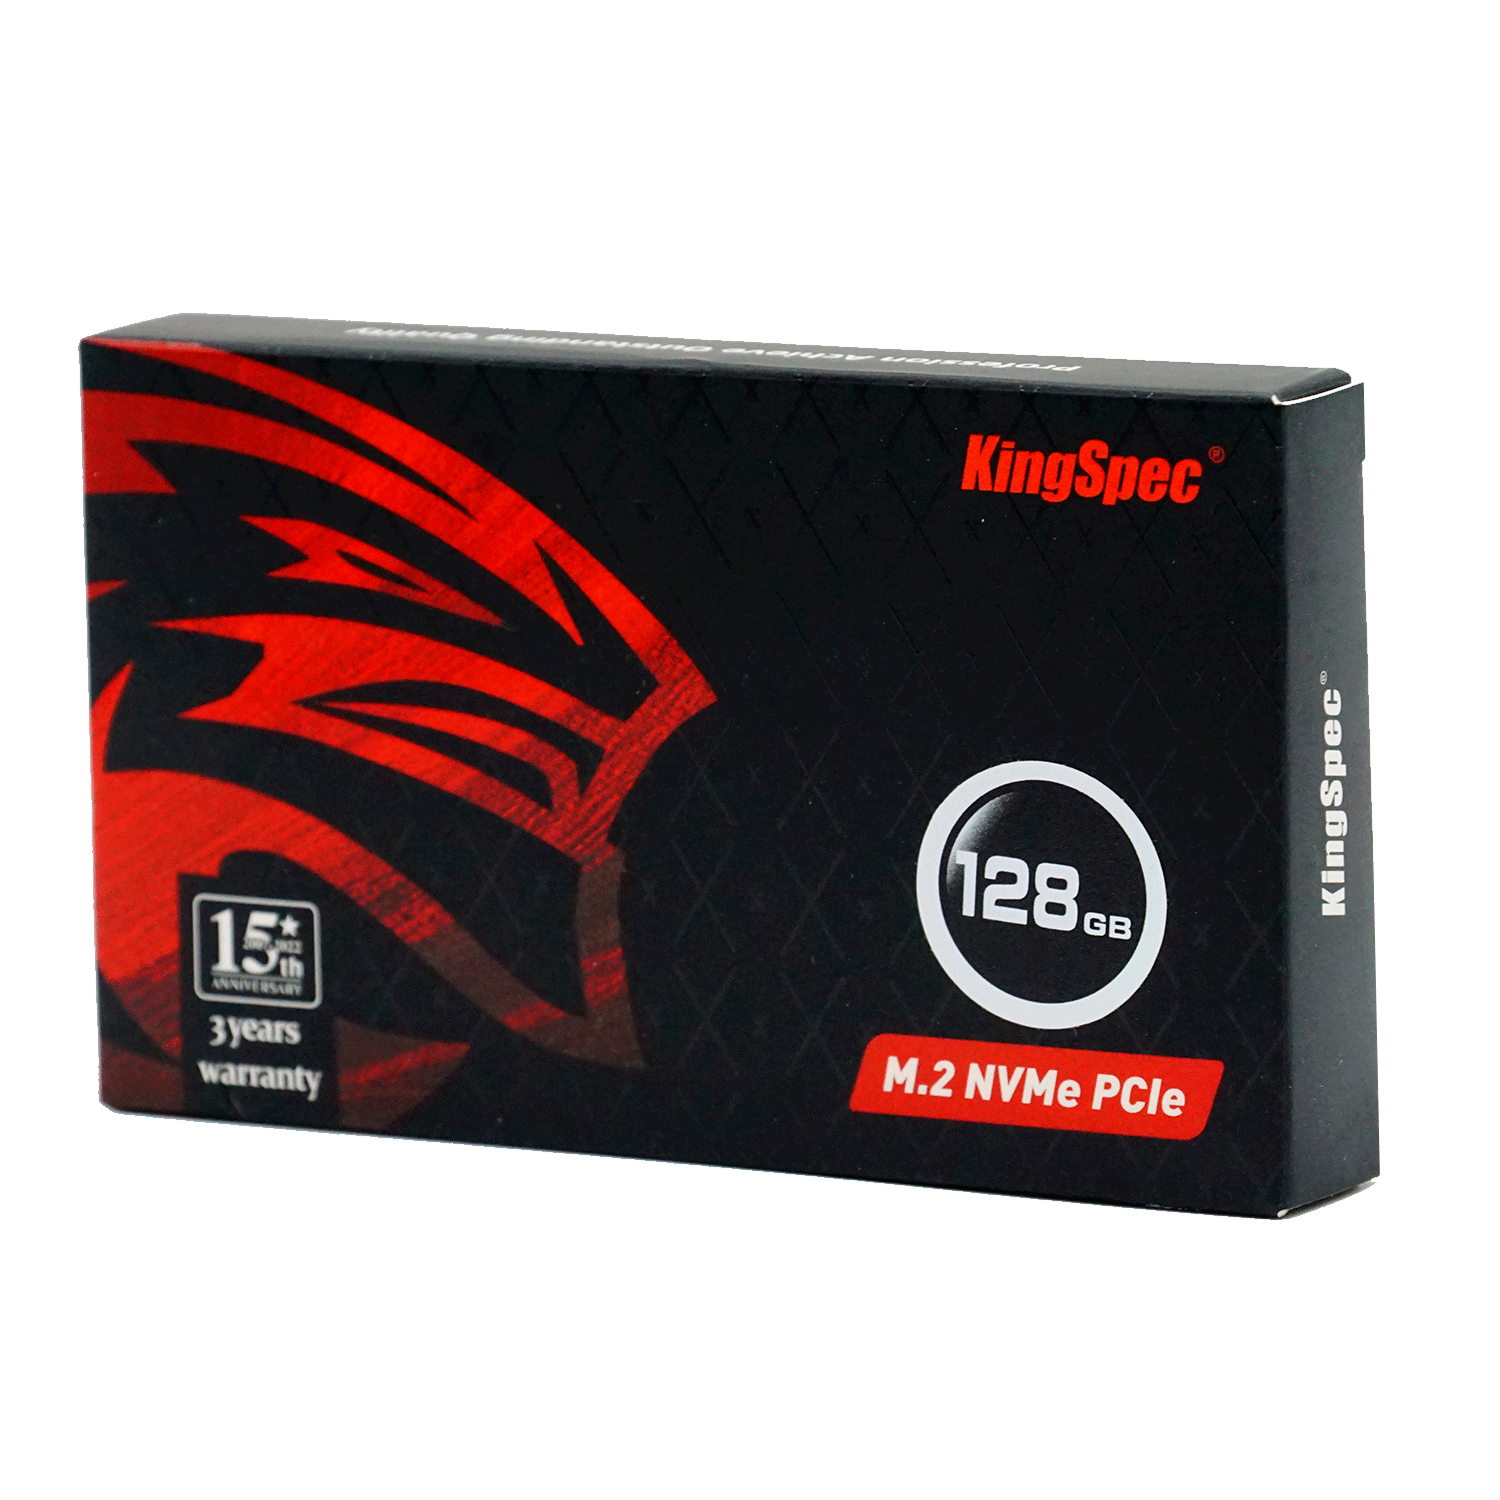 SSD M.2 KingSpec Yansen 128GB / Gen 3- (NE-128)
